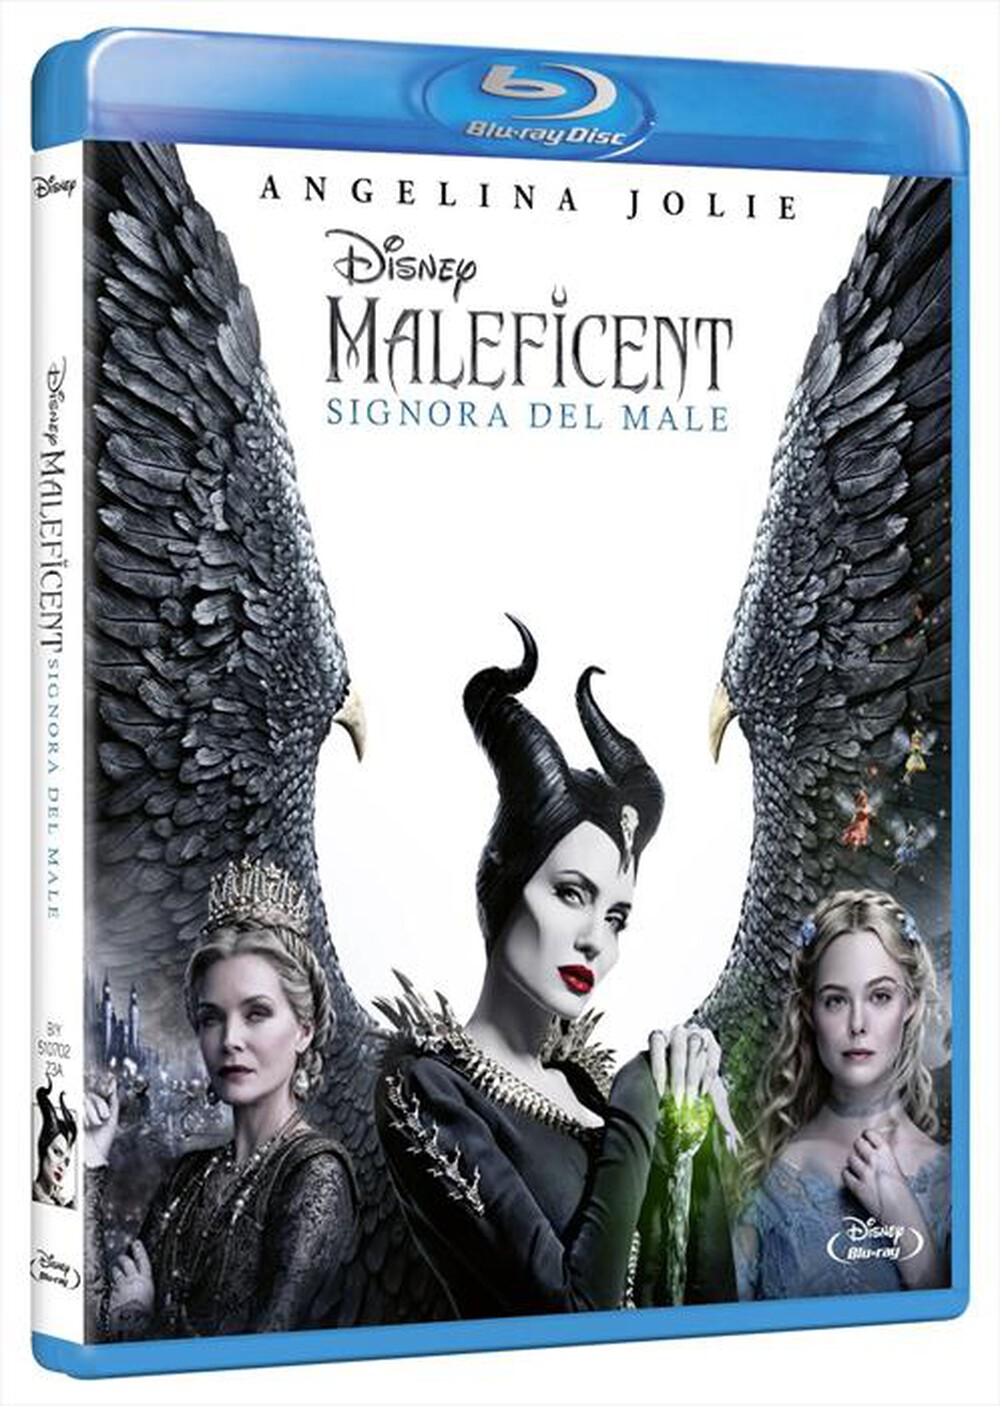 "EAGLE PICTURES - Maleficent - Signora Del Male"